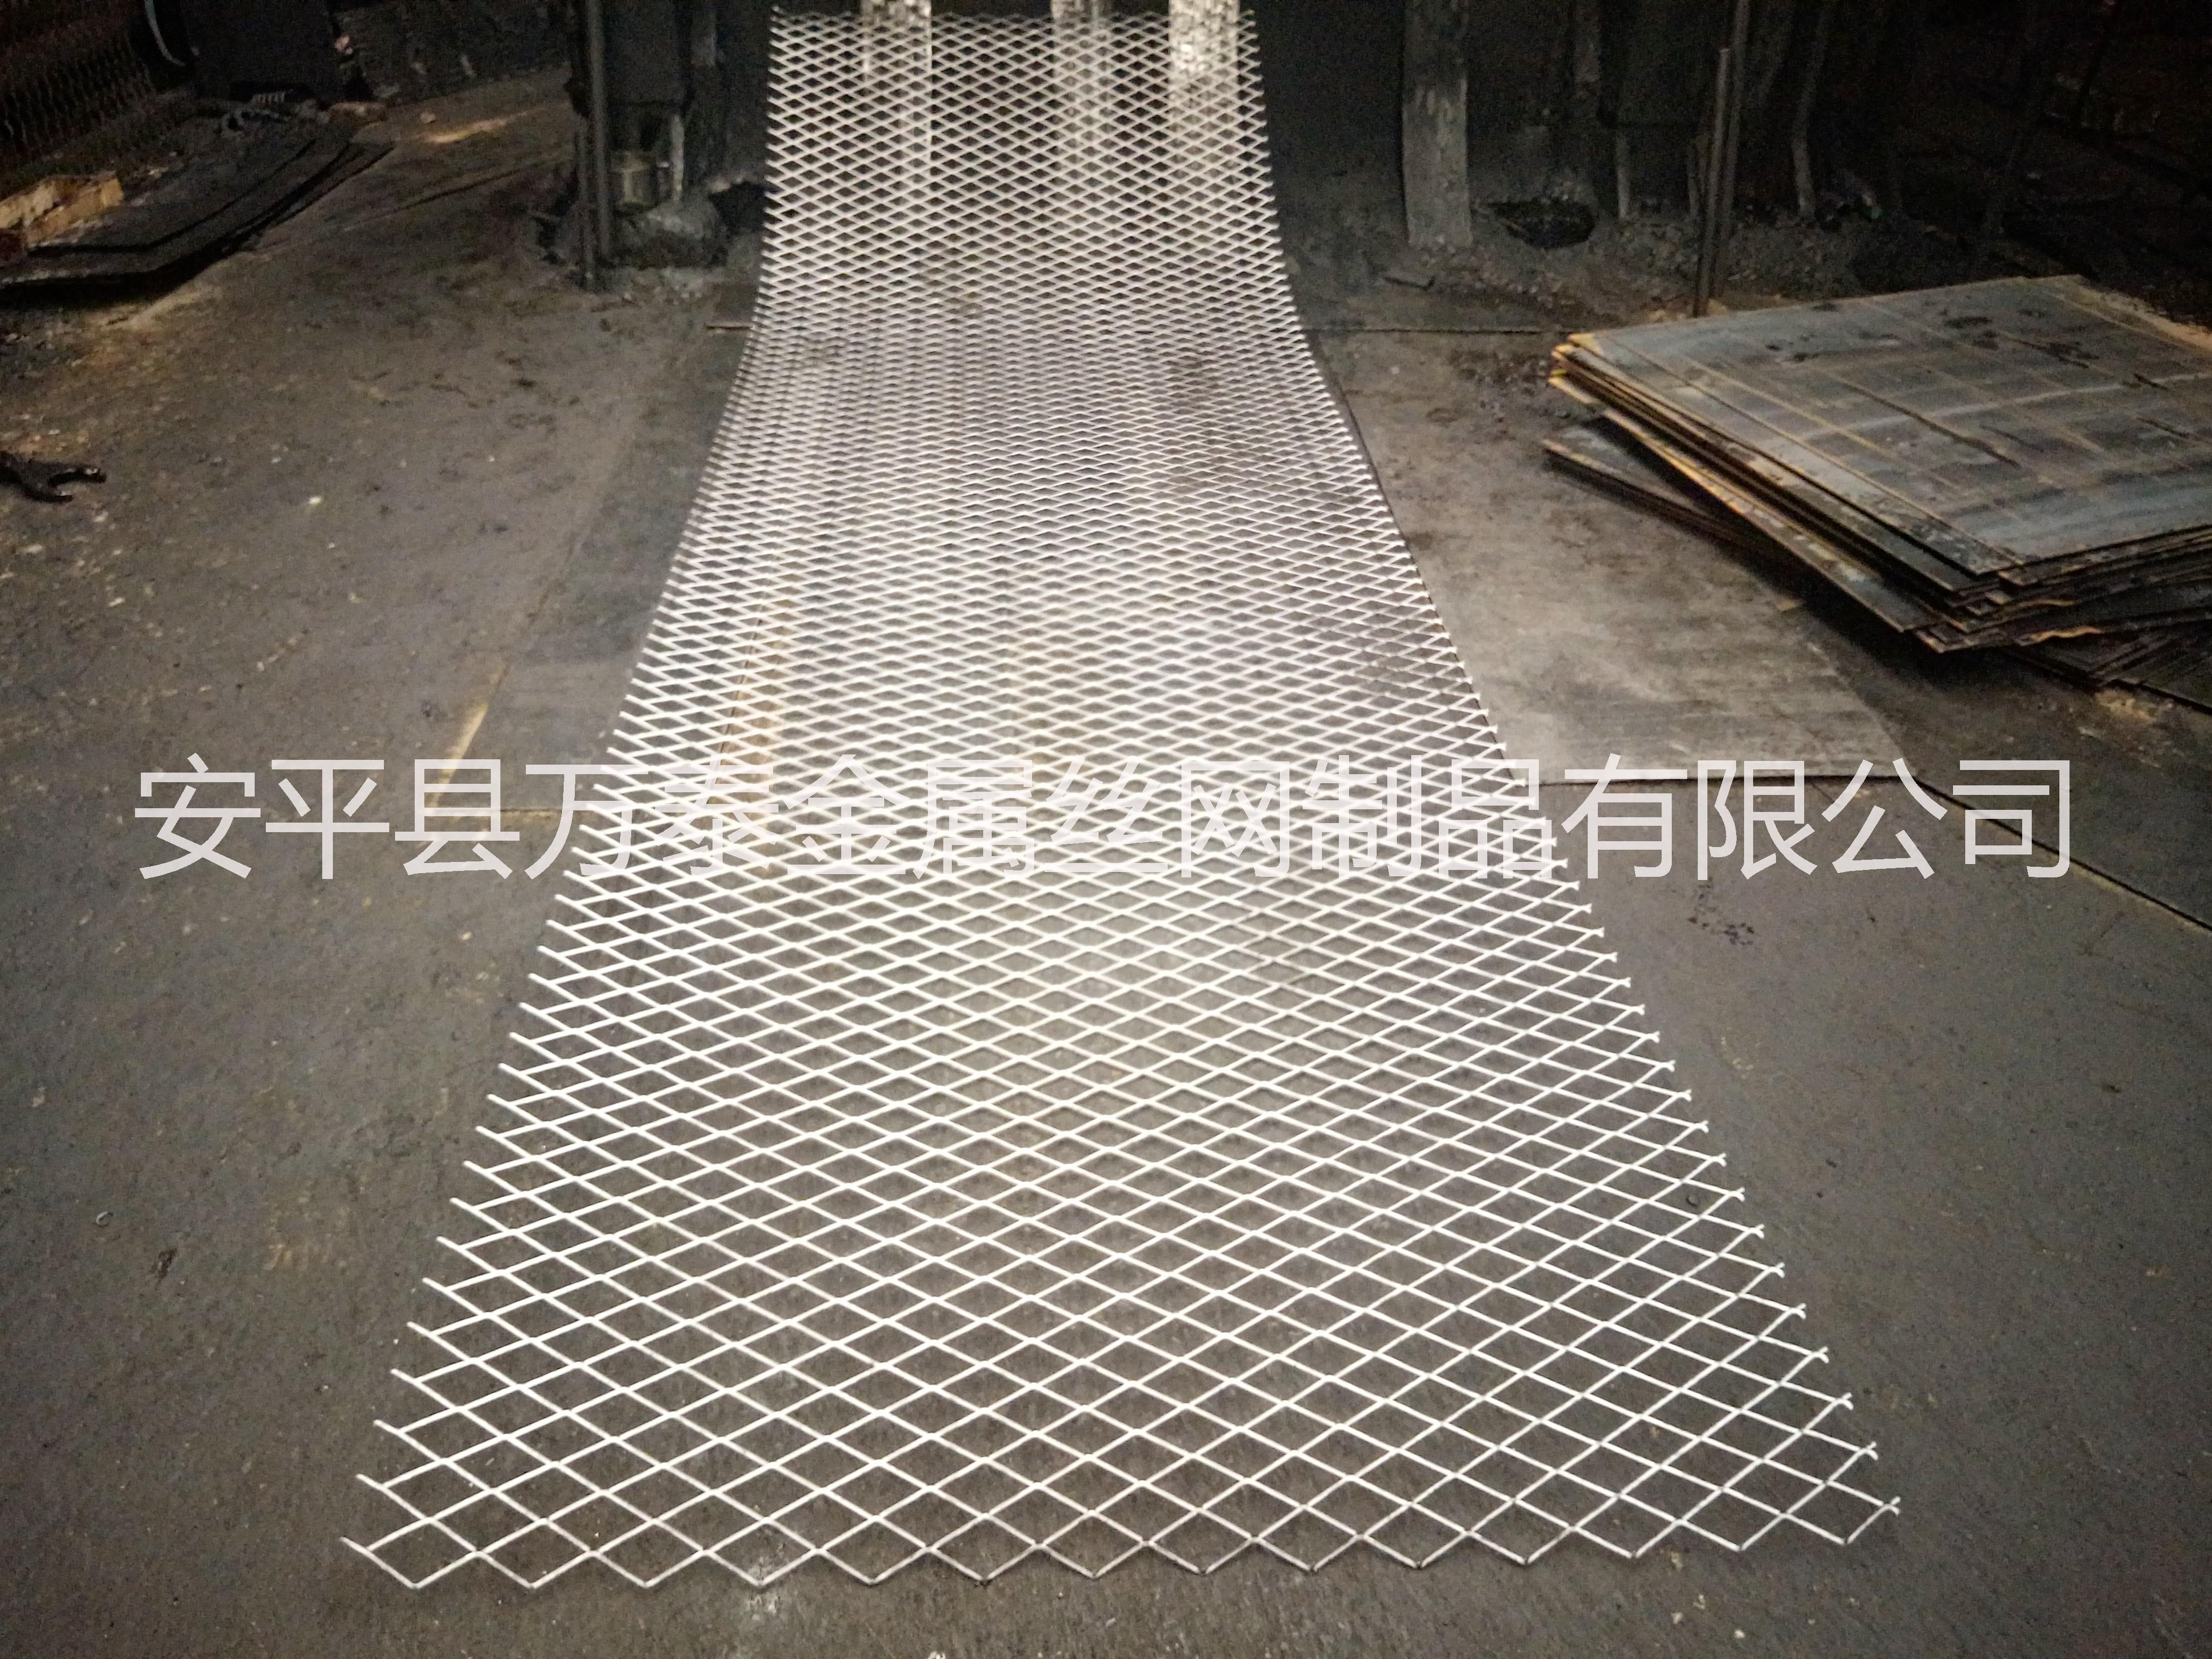 菱形防滑重型钢板网片 建筑脚手架脚踏网 万泰钢板网生产厂家图片